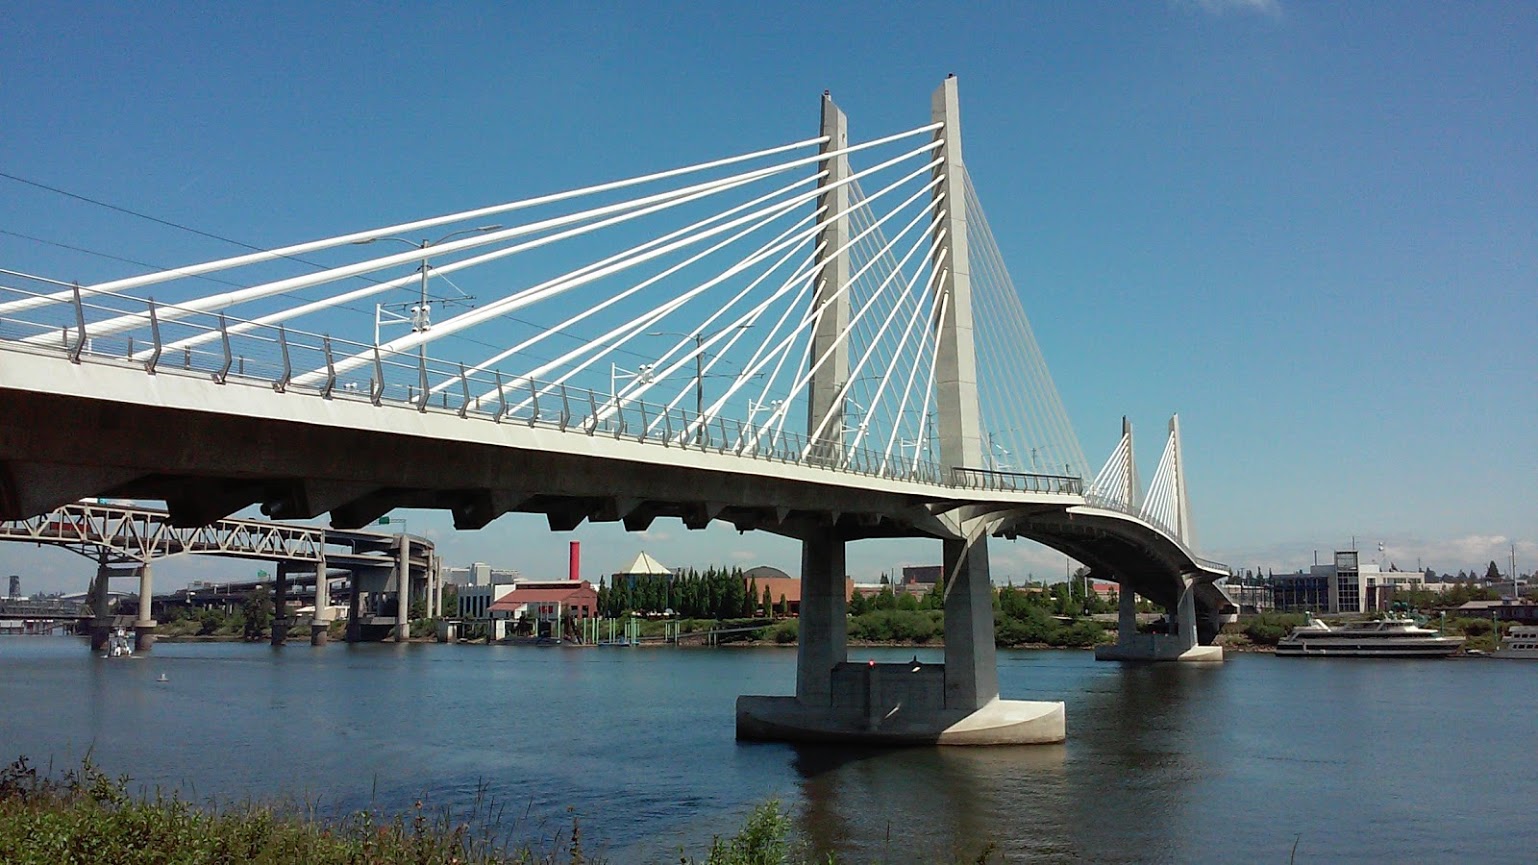 Tillikum Bridge stretching over the Willamette River